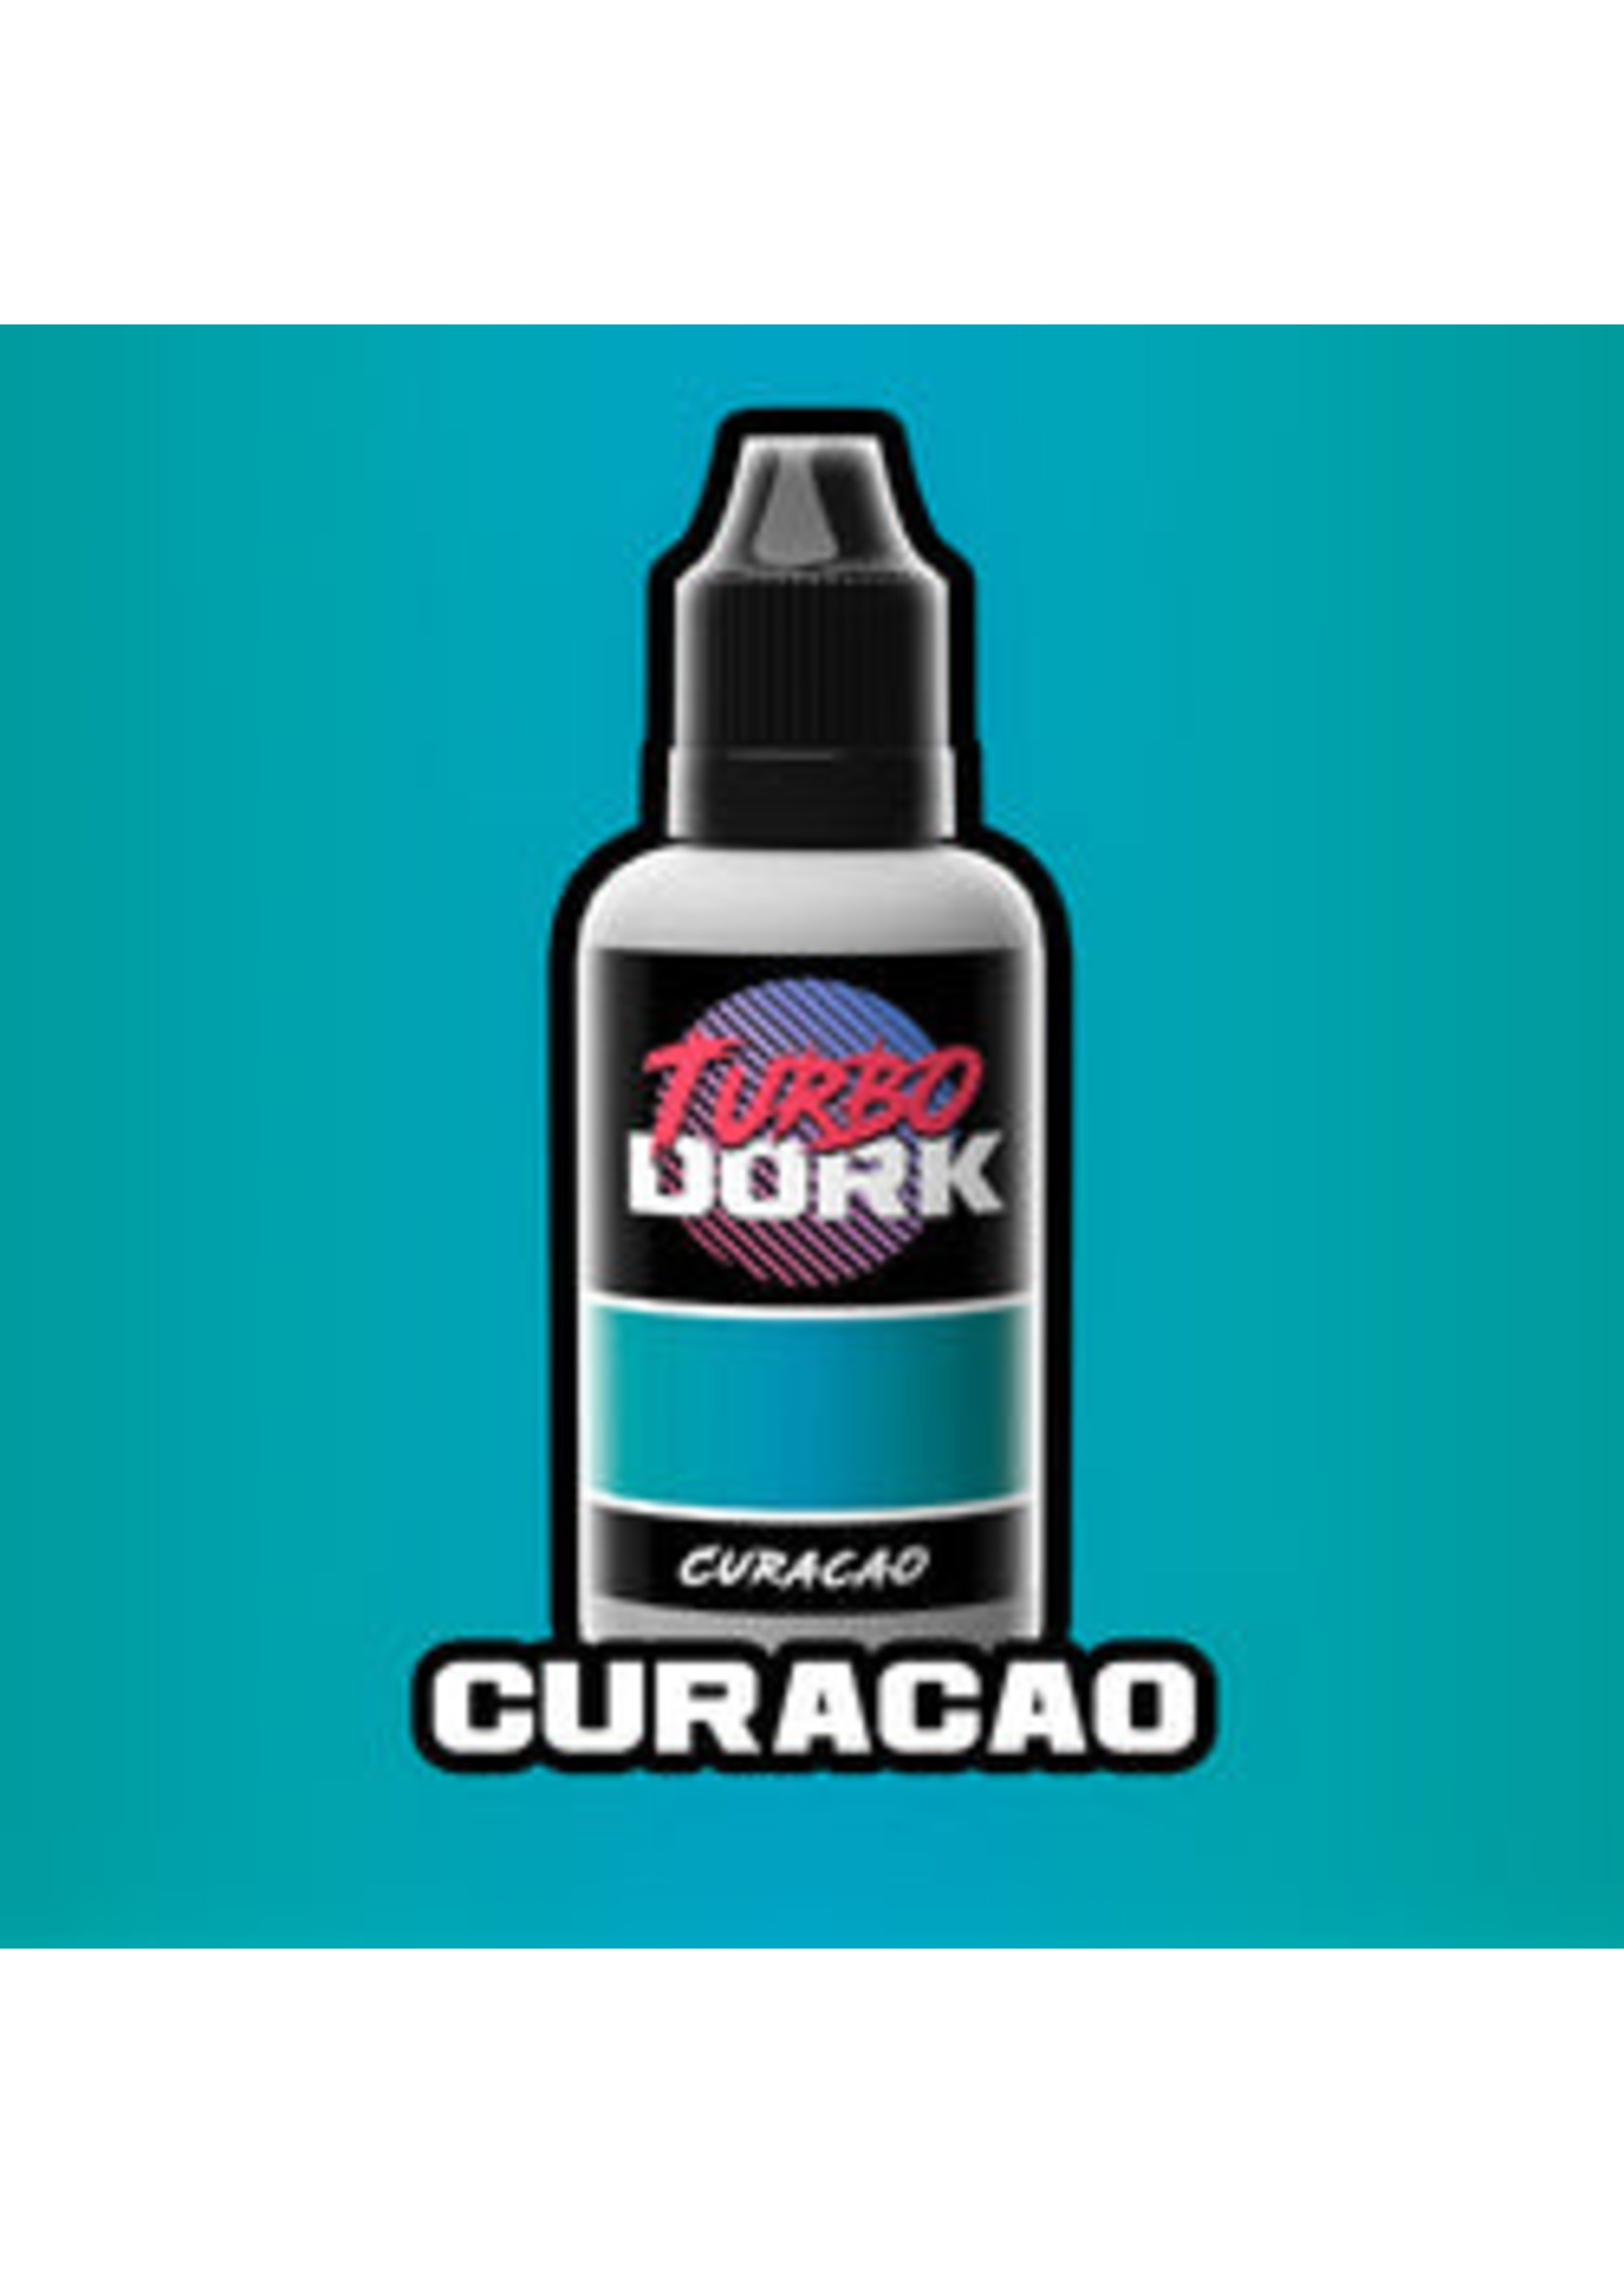 TurboDork CURACAO METALLIC ACRYLIC PAINT